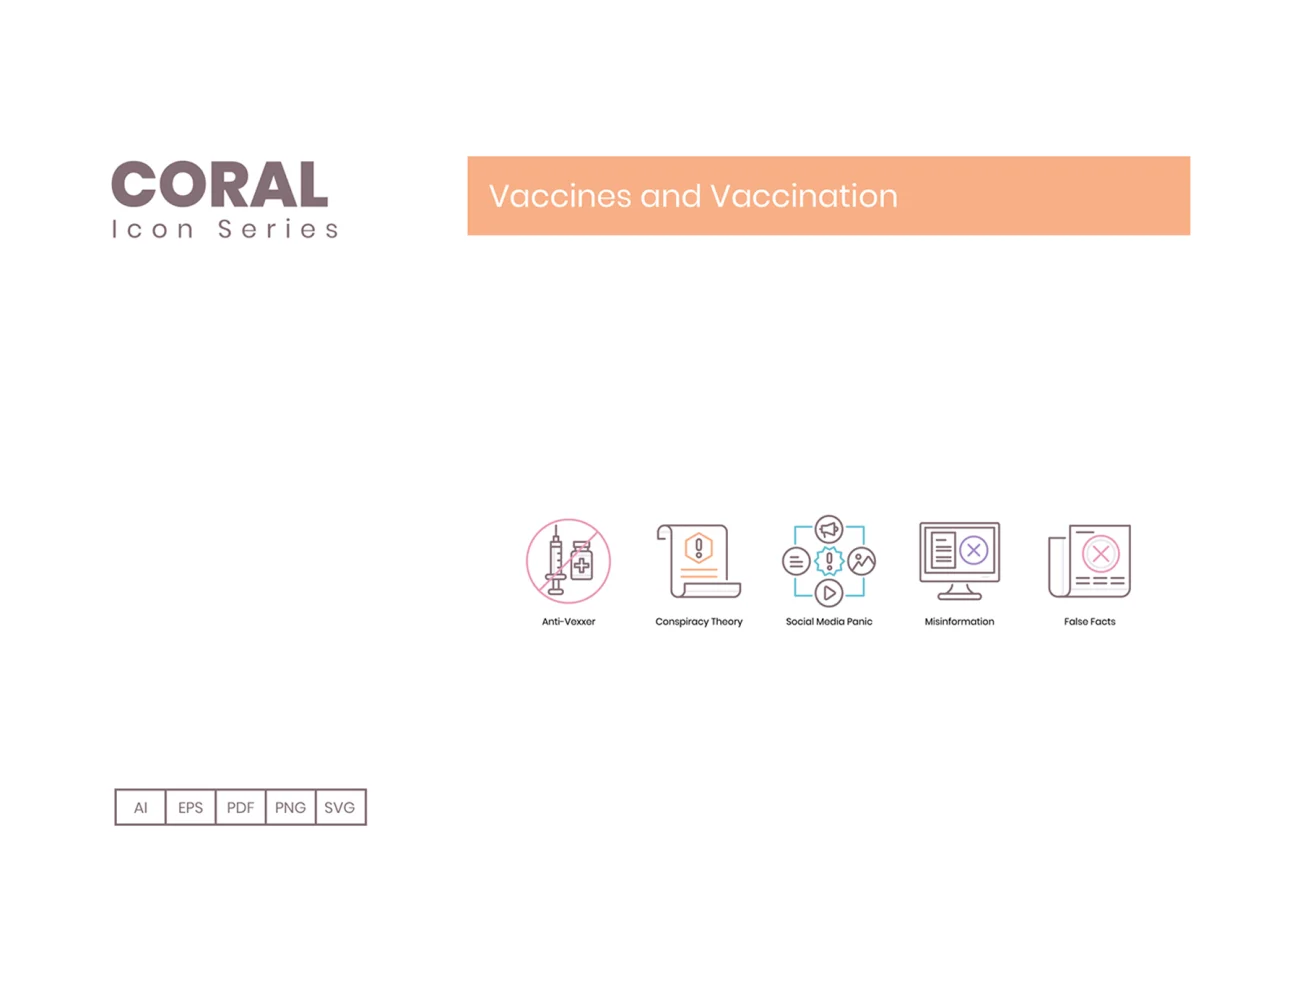 65个病毒疫苗接种图标珊瑚色系类 65 Vaccines and Vaccination Icons  Coral Series插图9